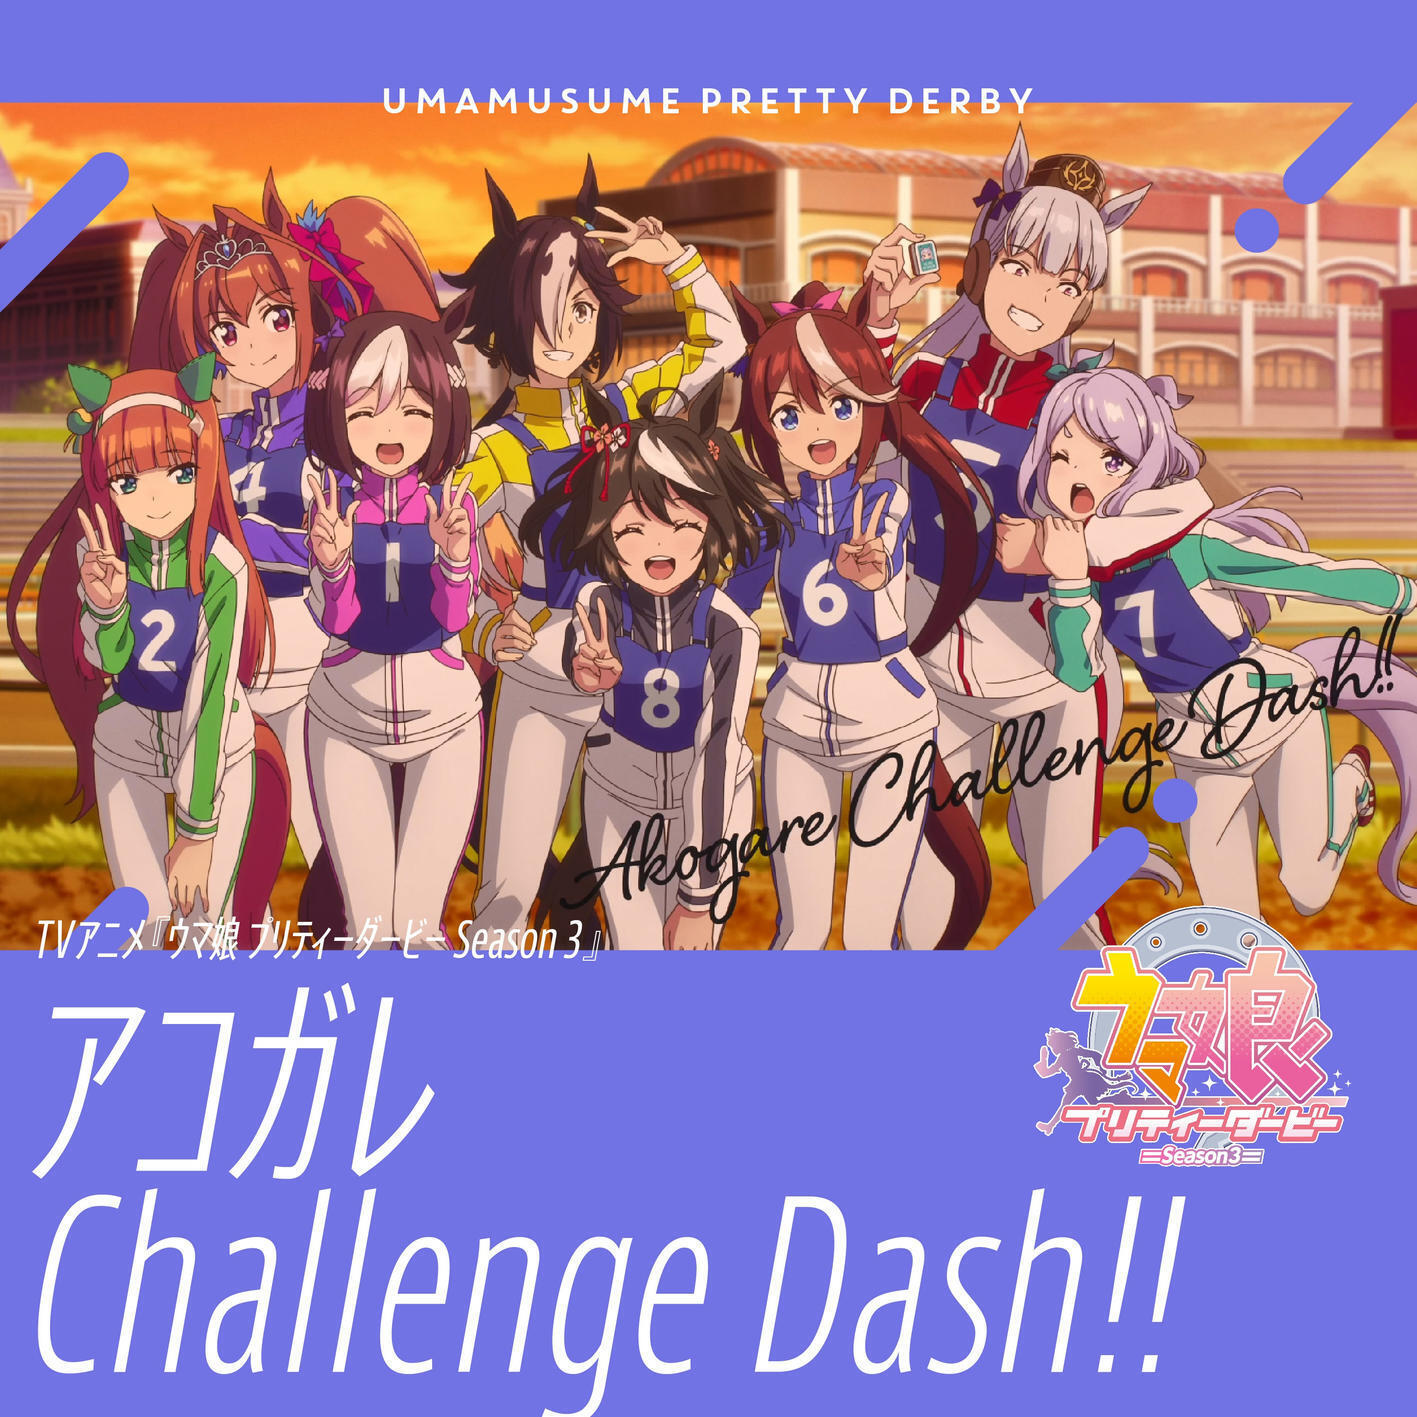 Kitasan Black (CV: Hinaki Yano), Special Week (CV: Azumi Waki), Silence Suzuka (CV: Marika Kouno), Tokai Teiou (CV: Machico), Vodka (CV: Ayaka Ohashi), Daiwa Scarlet (CV: Chisa Kimura), Gold Ship (CV: Hitomi Ueda), Meijiro McQueen (CV: Saori Oonishi) - Akogare Challenge Dash  